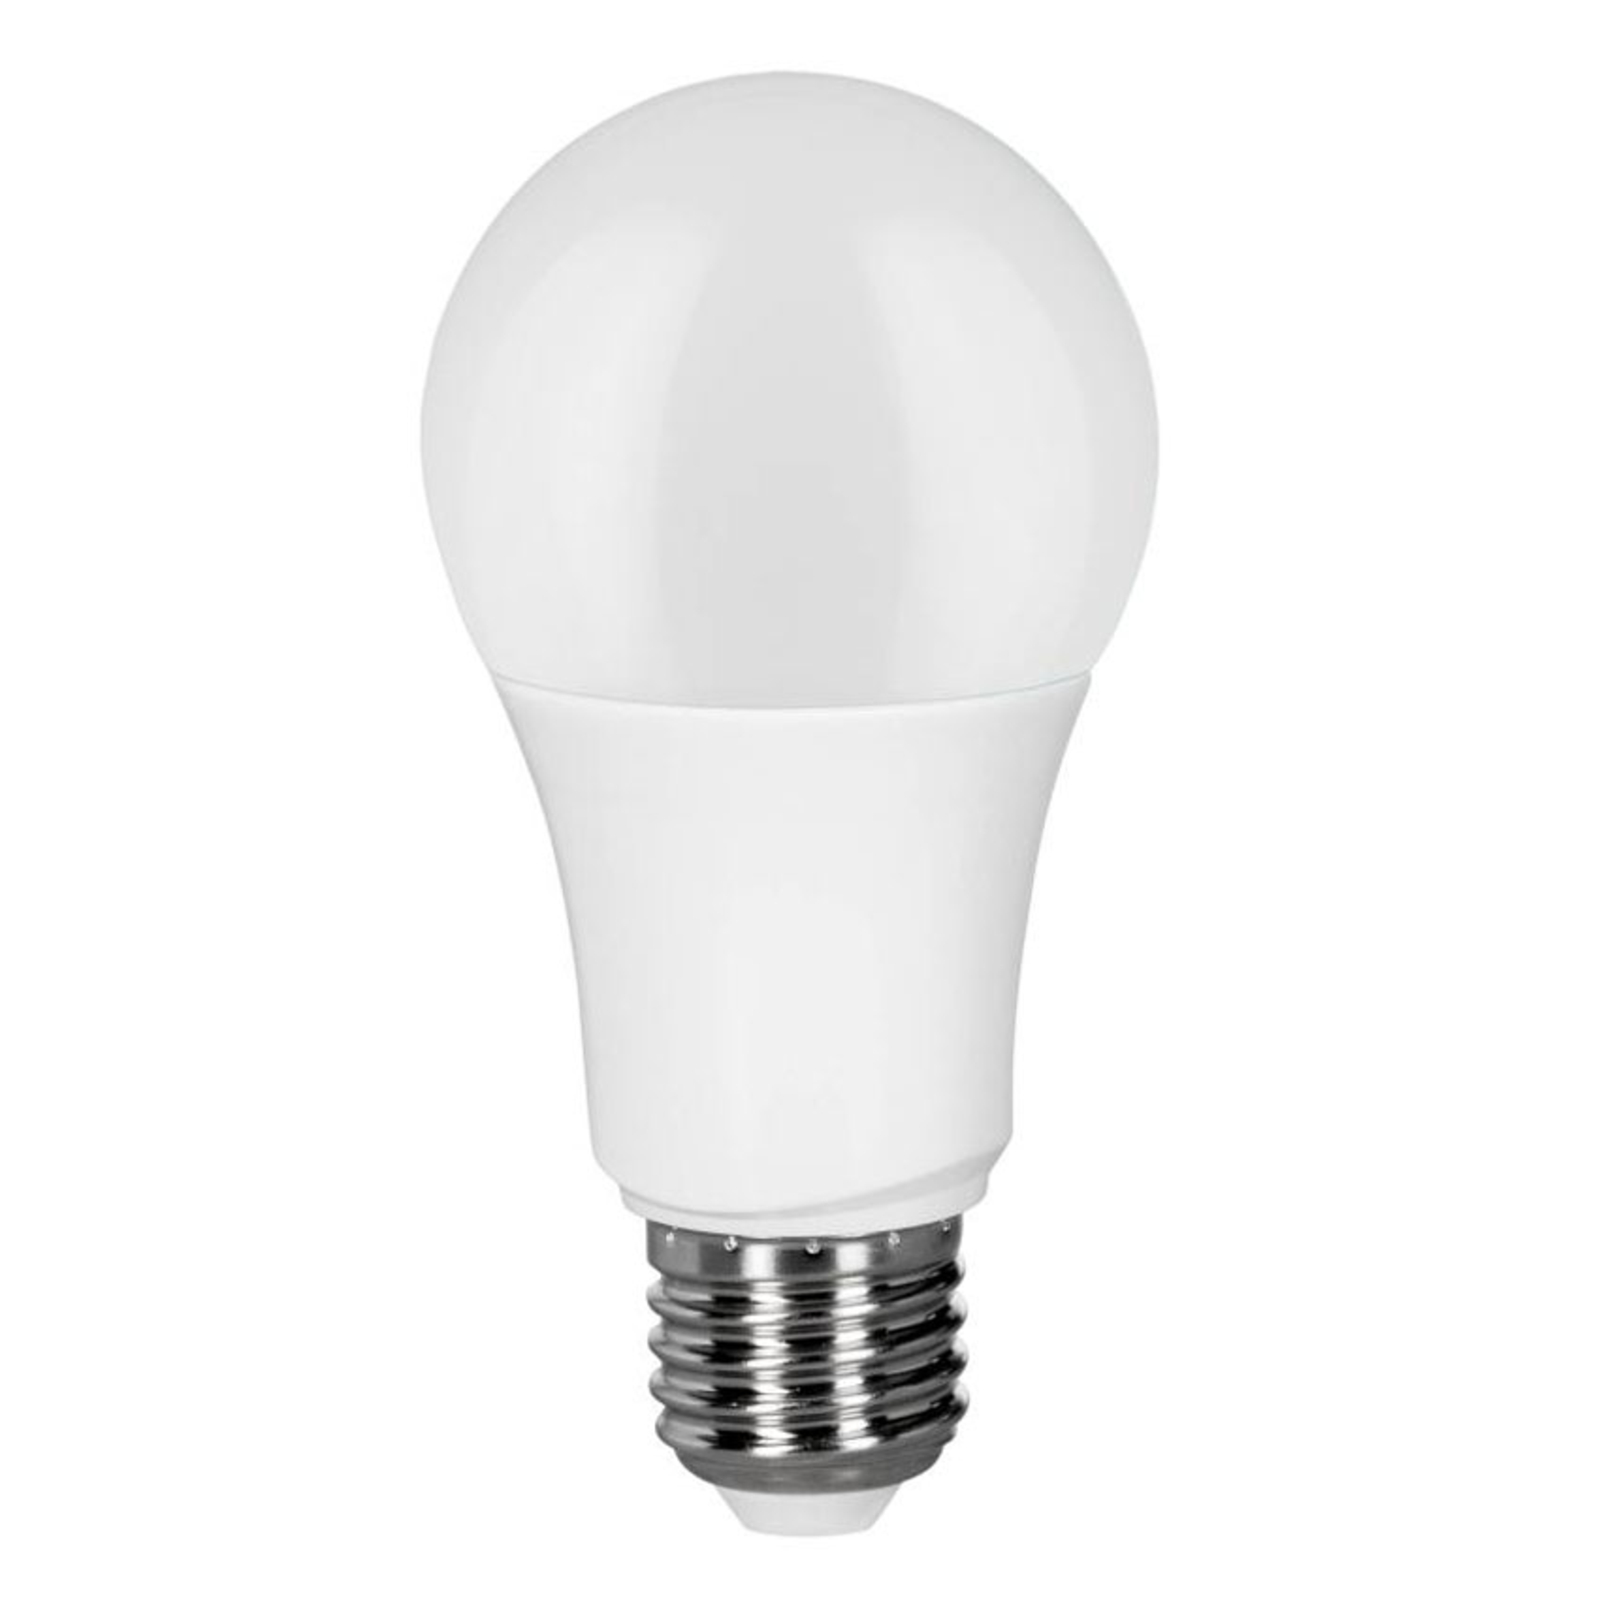 Müller Licht tint white ampoule LED E27 9 W, CCT